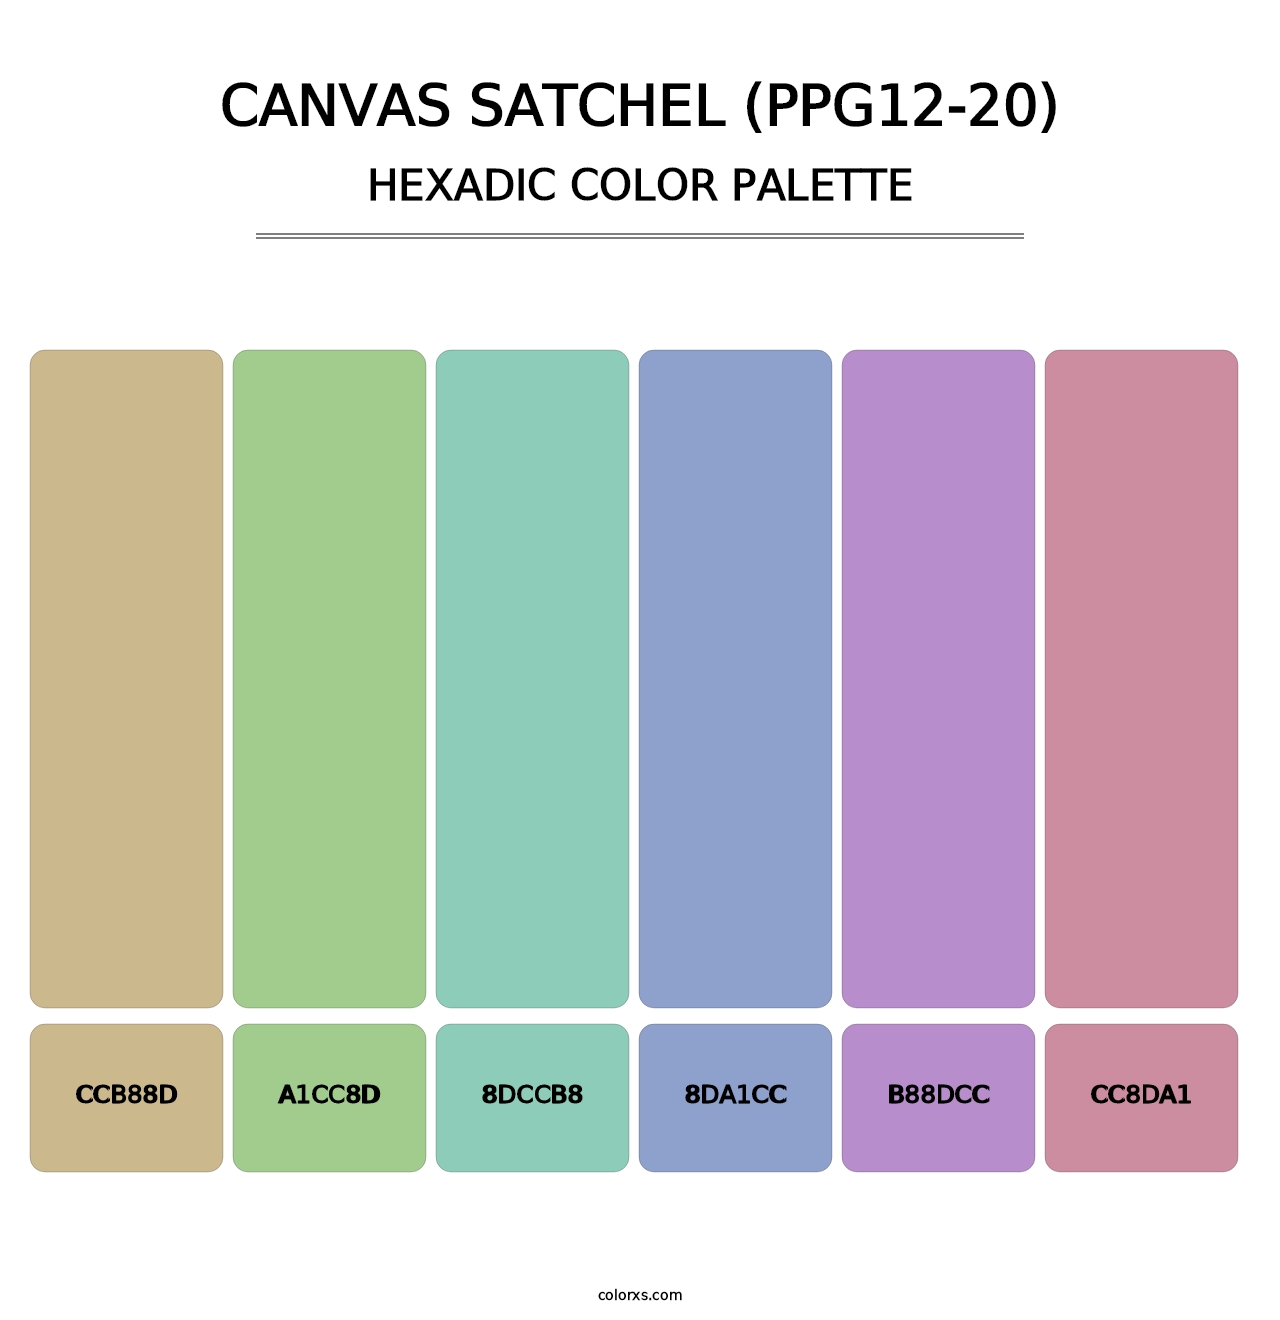 Canvas Satchel (PPG12-20) - Hexadic Color Palette